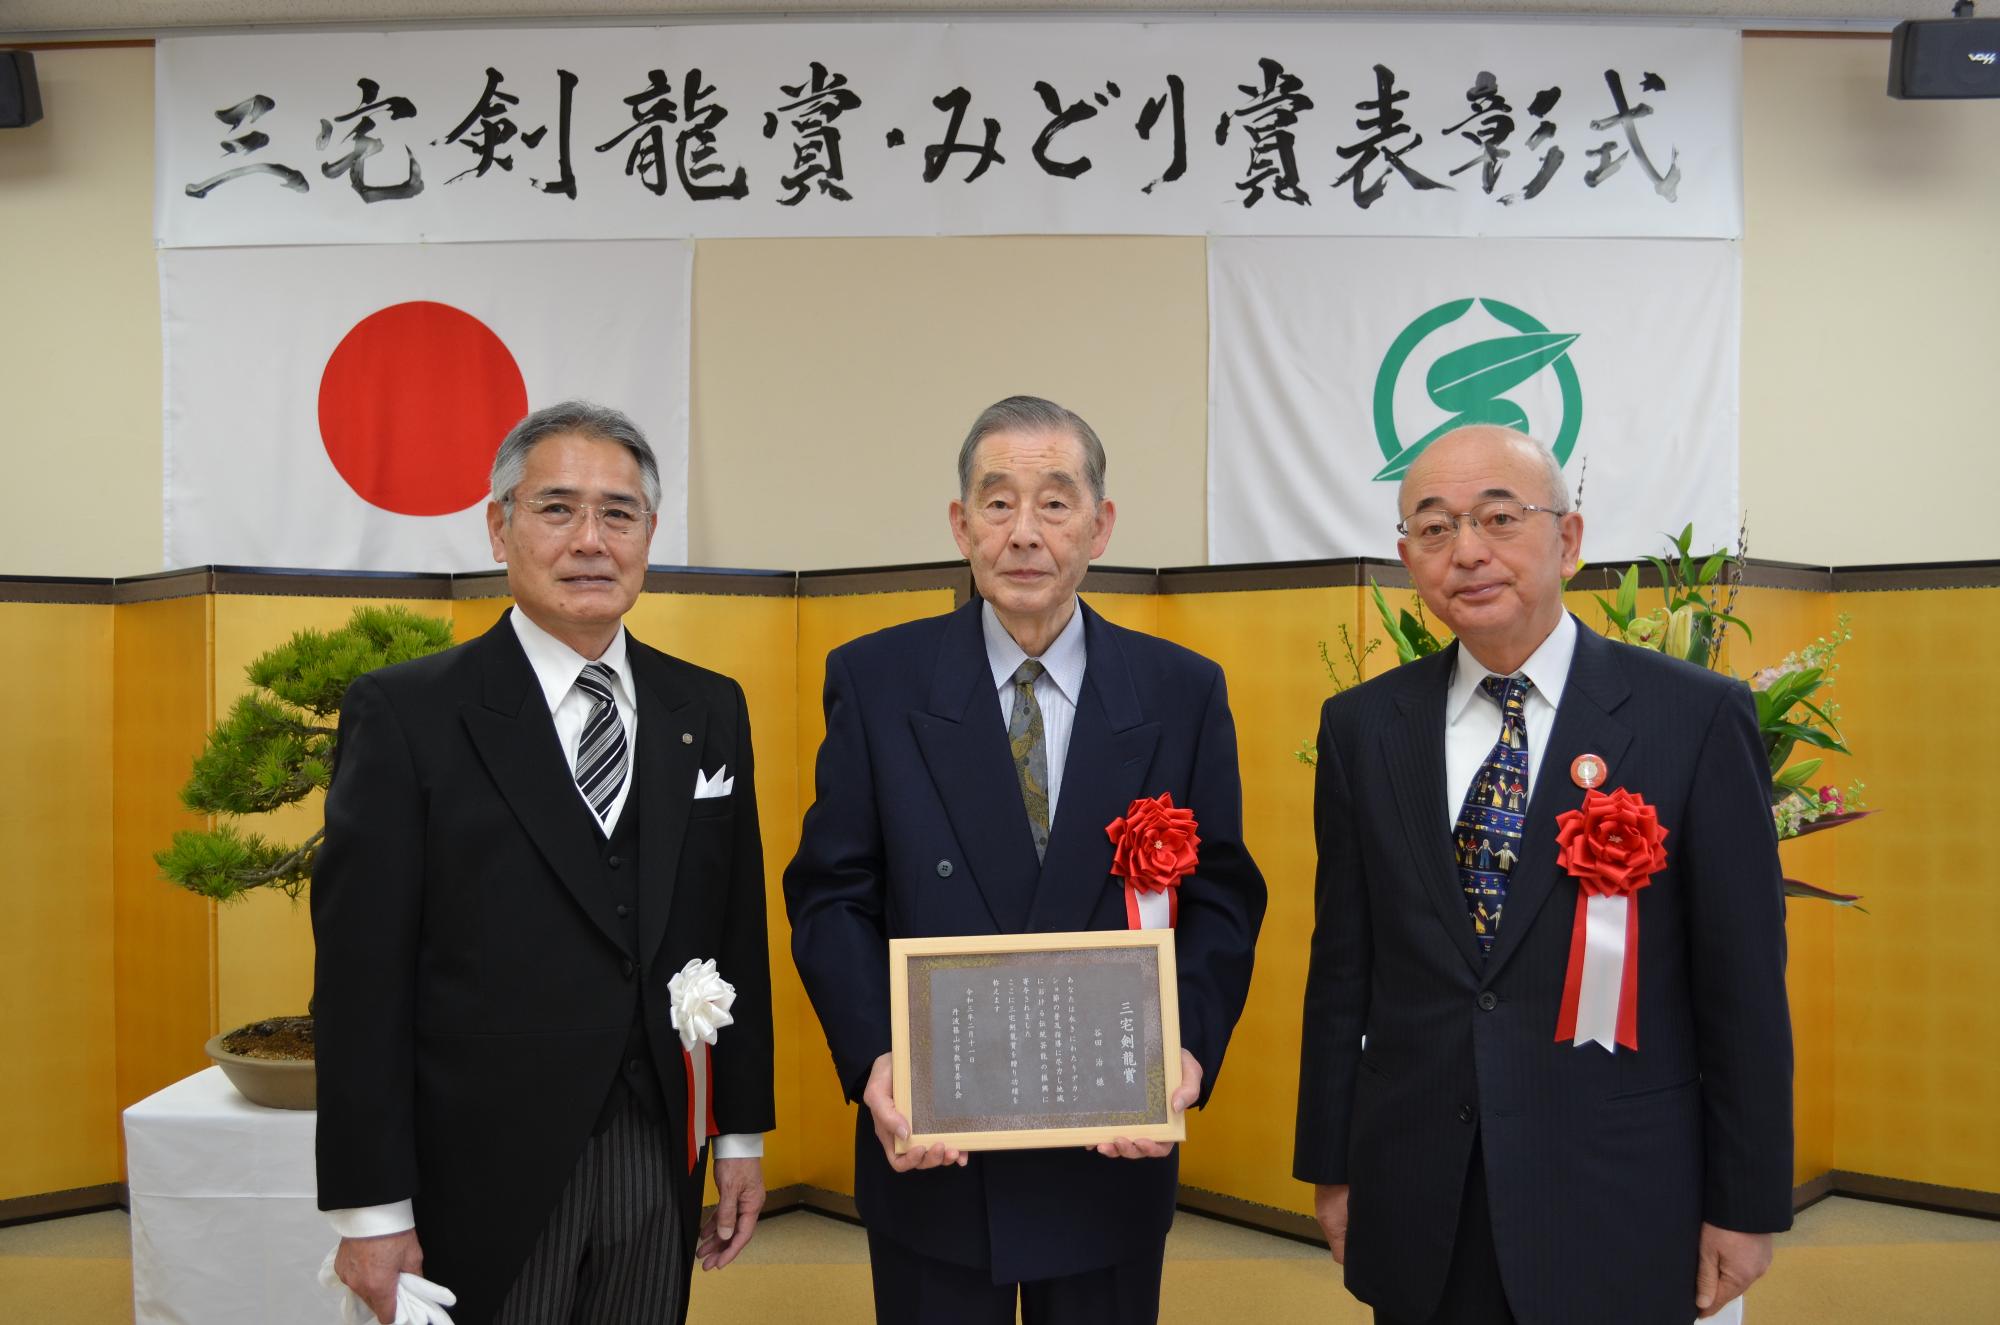 教育長と市長、表彰盾を手に持つ谷田さん。